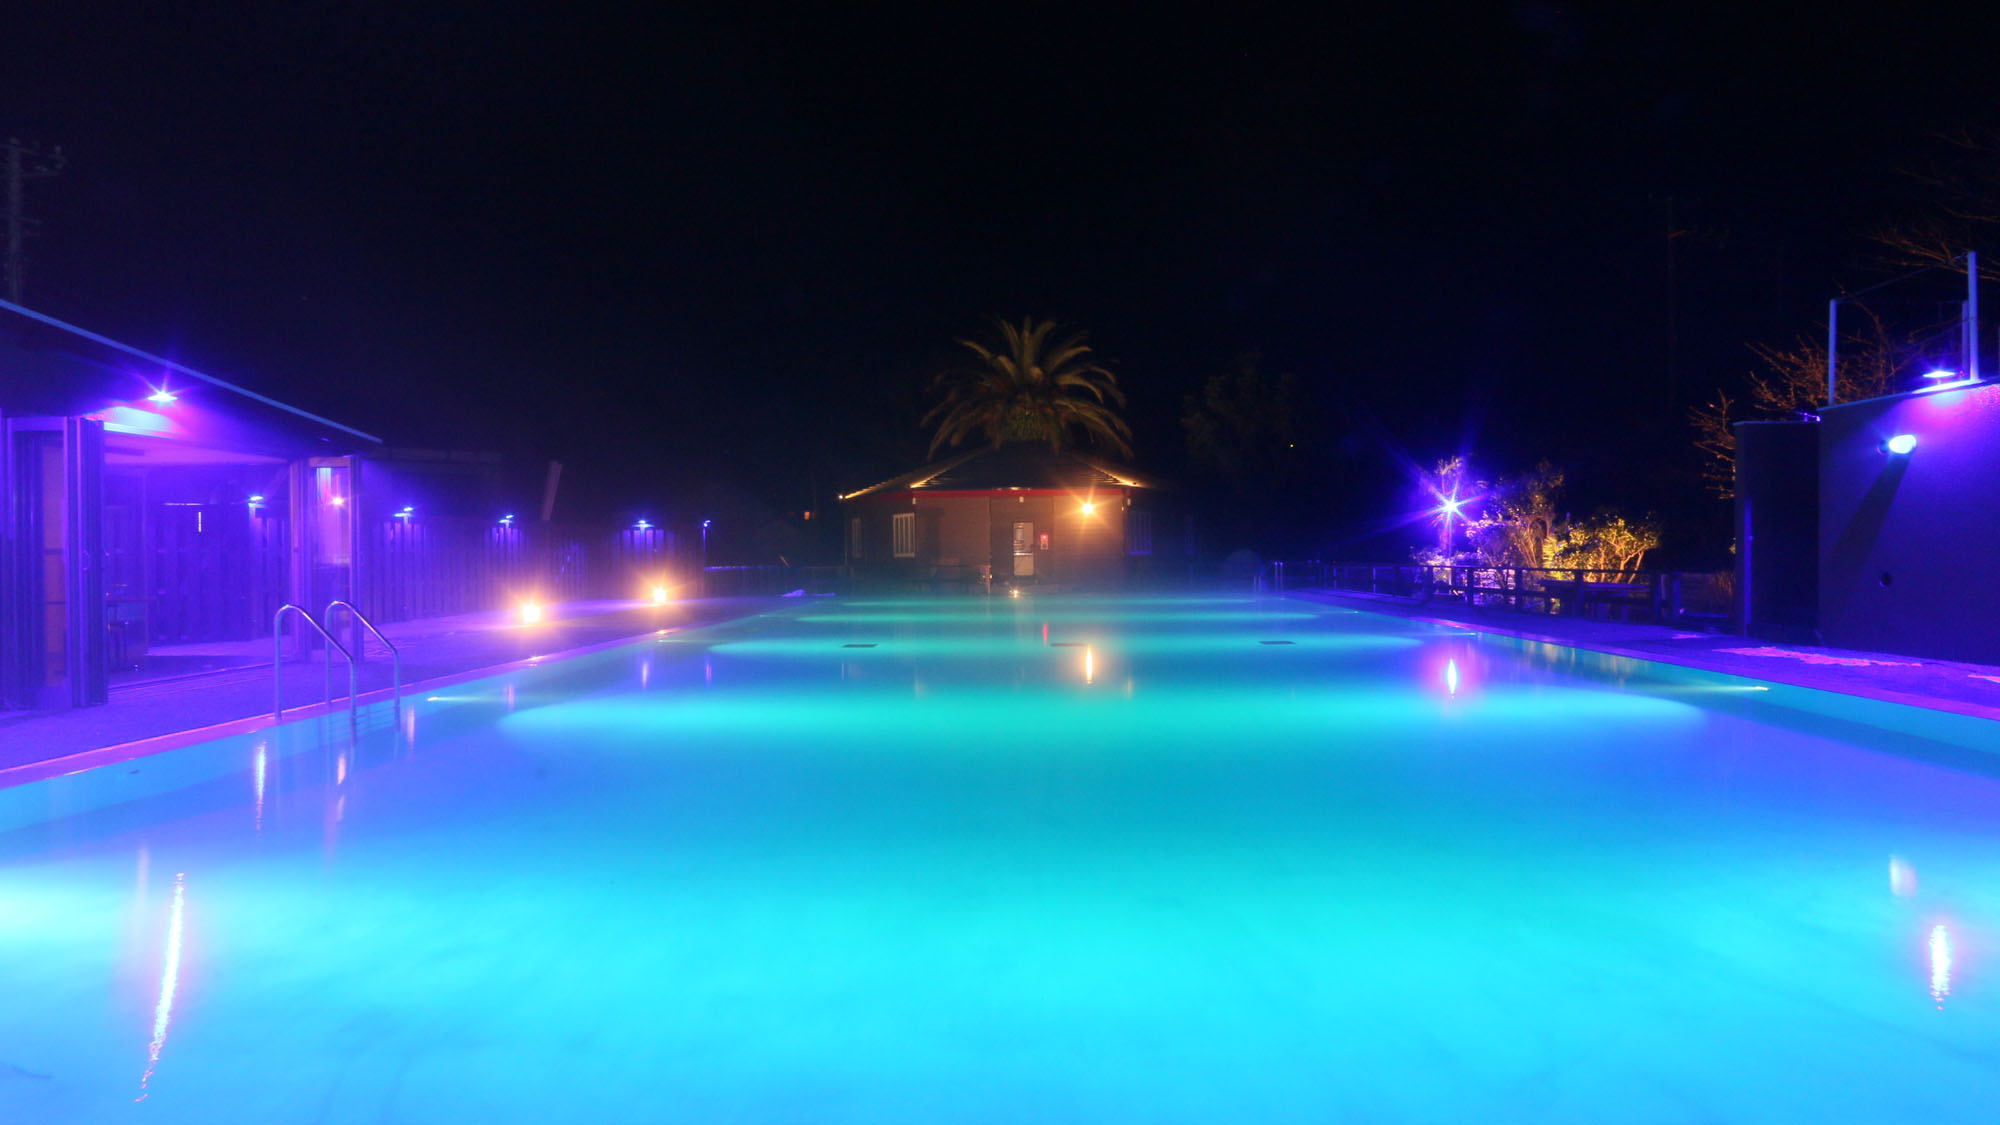 ナイトプール -Night pool-◆温泉プールは、夜もお楽しみいただけます